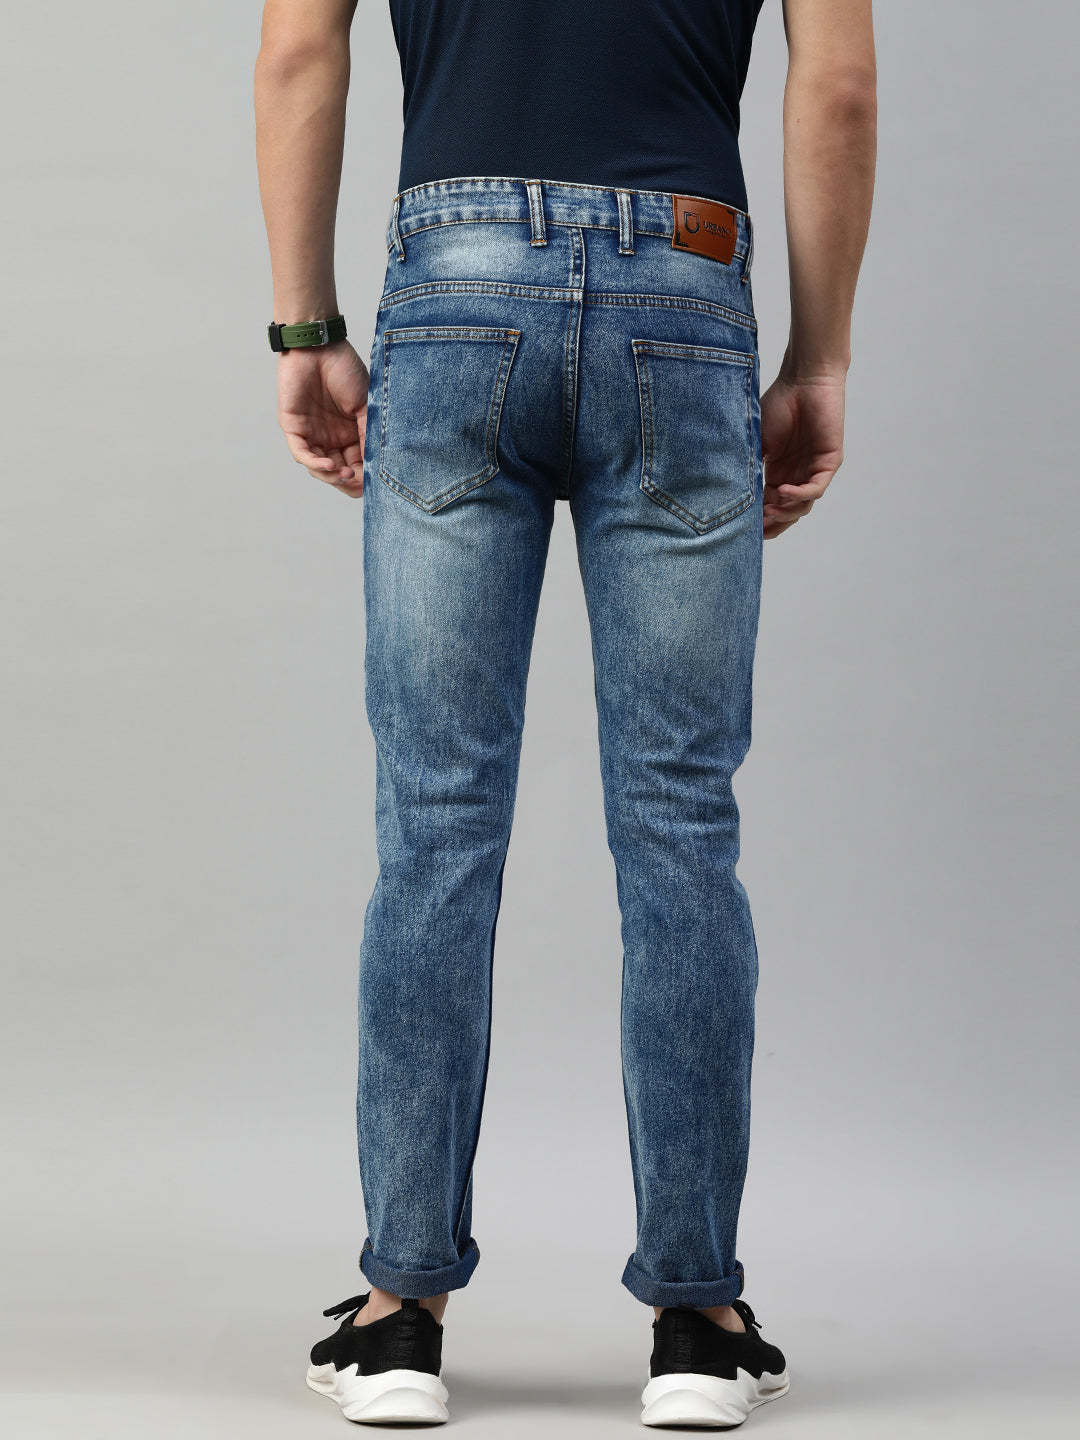 Men's Light Blue Slim Fit Whisker Washed Jeans Stretchable